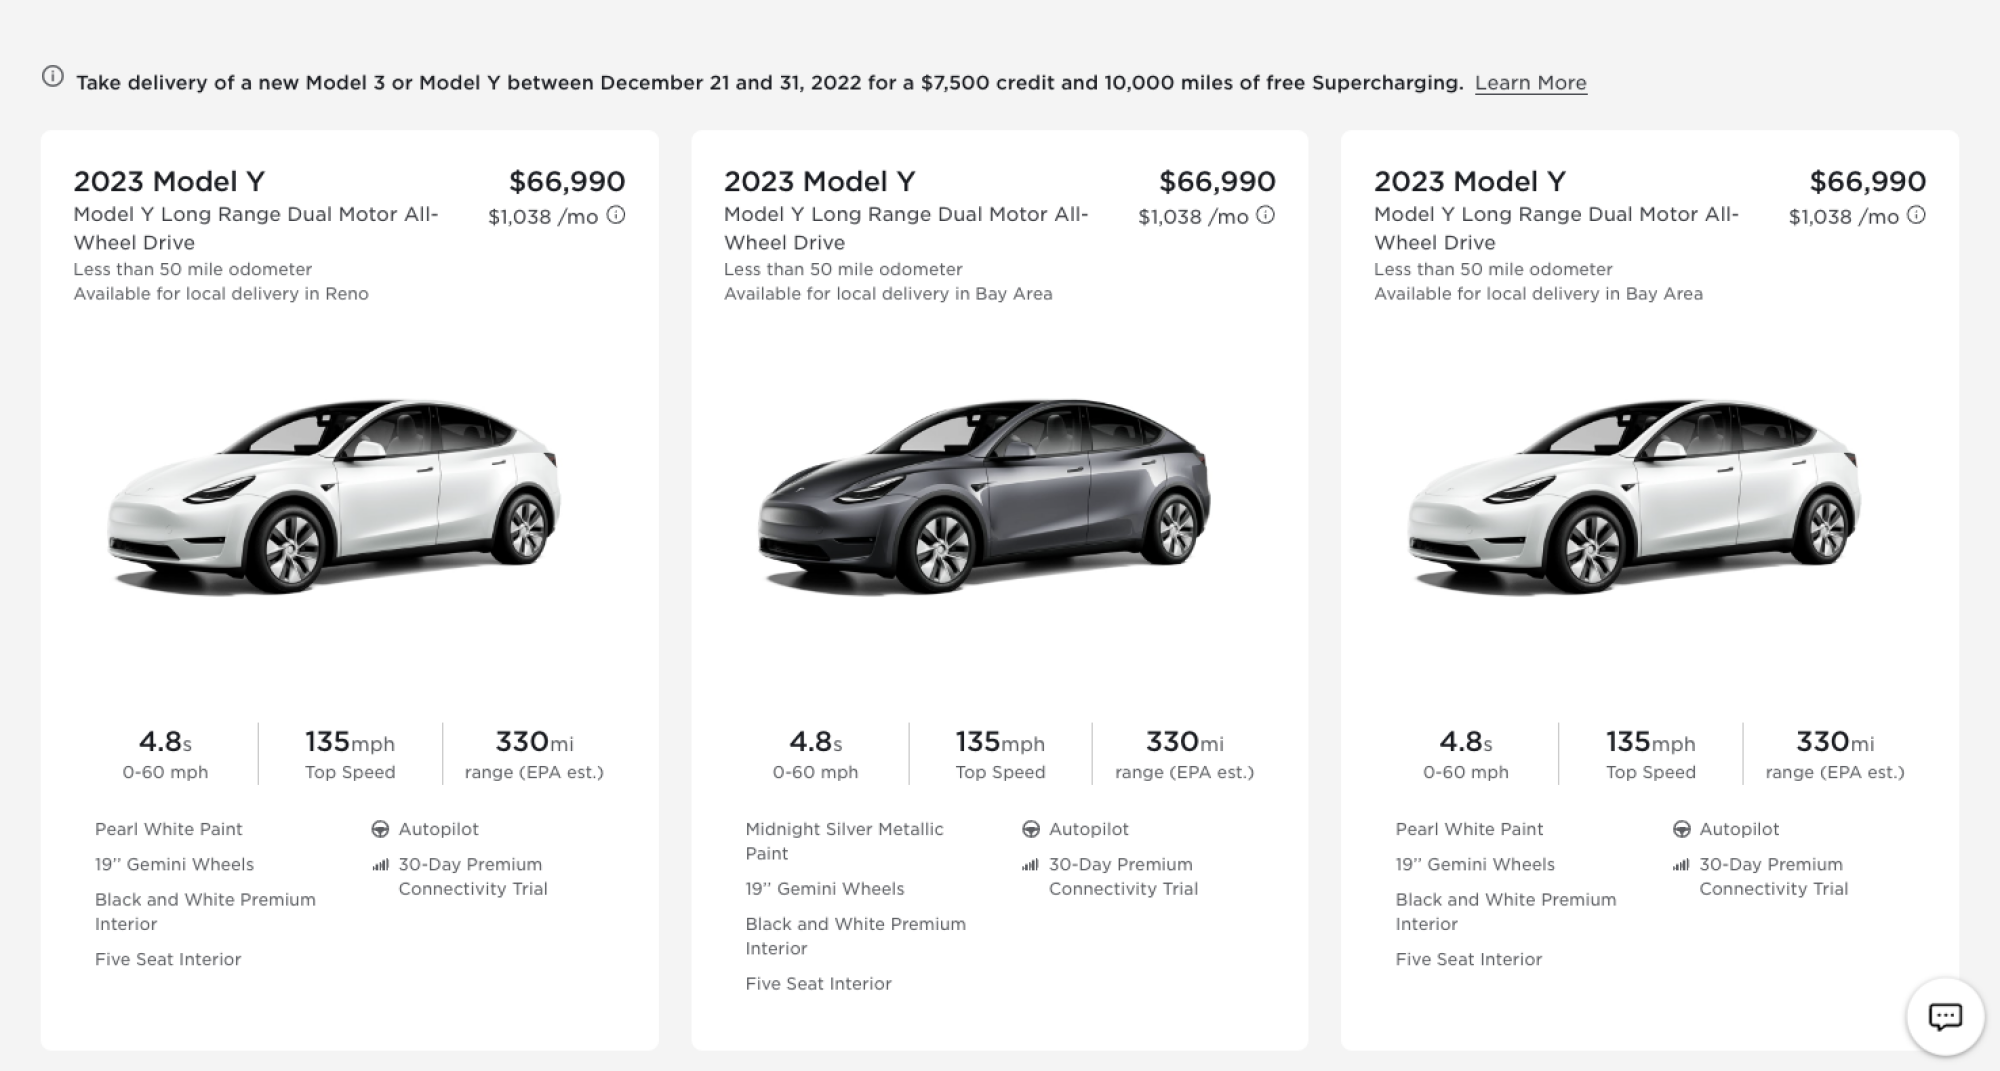 Tesla hết thời hoàng kim: Liên tục tung ra ưu đãi mua xe, có lúc sản lượng dư thừa vượt lượng đơn cần giao - Ảnh 2.